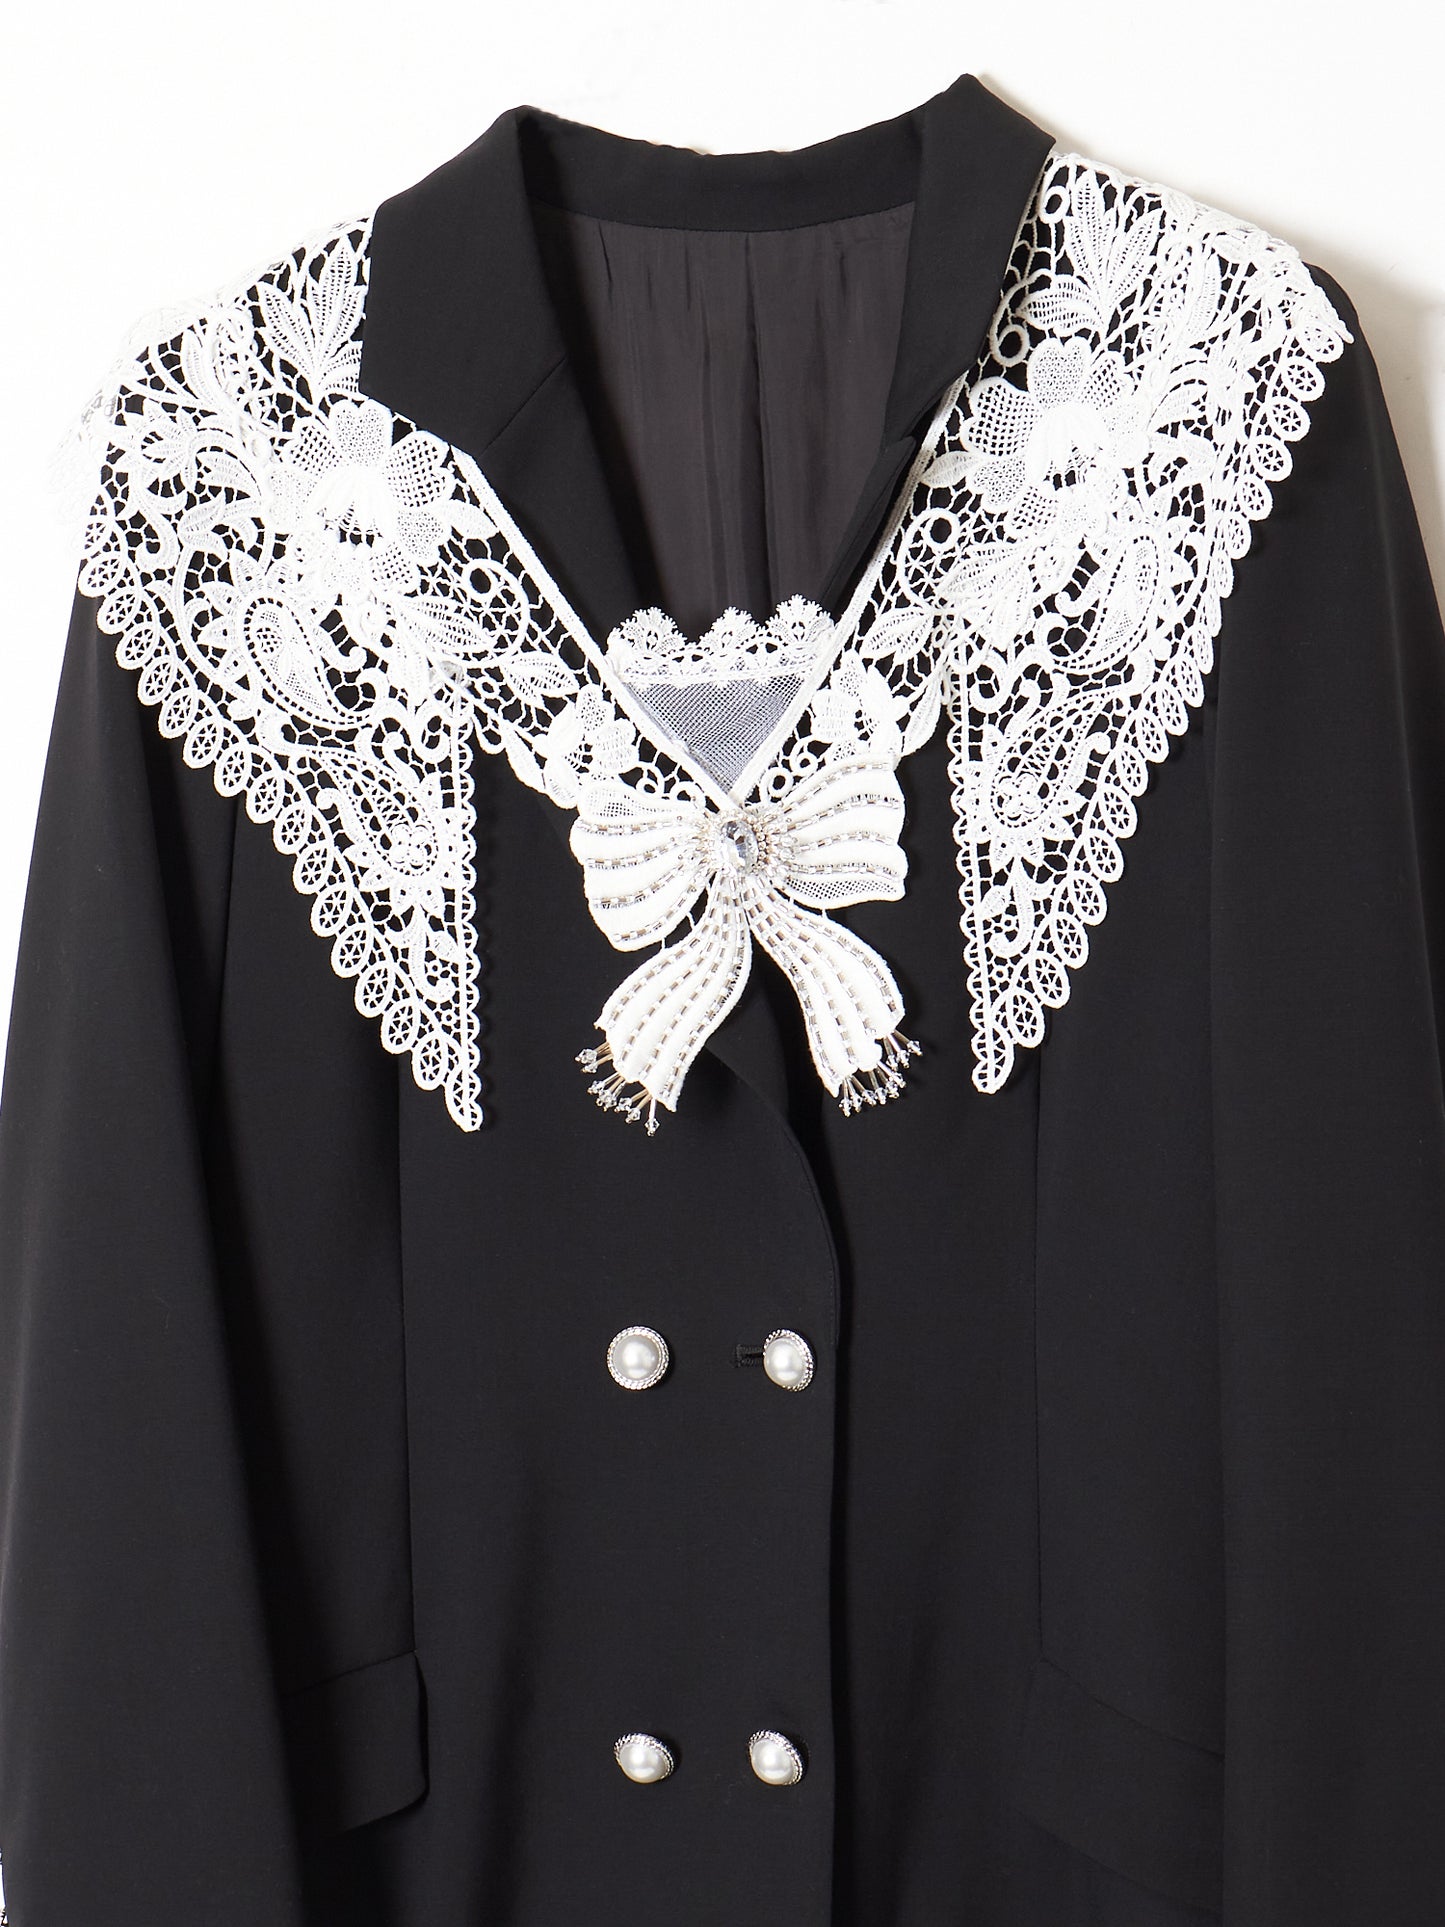 sailor lace suit dress【Stock】